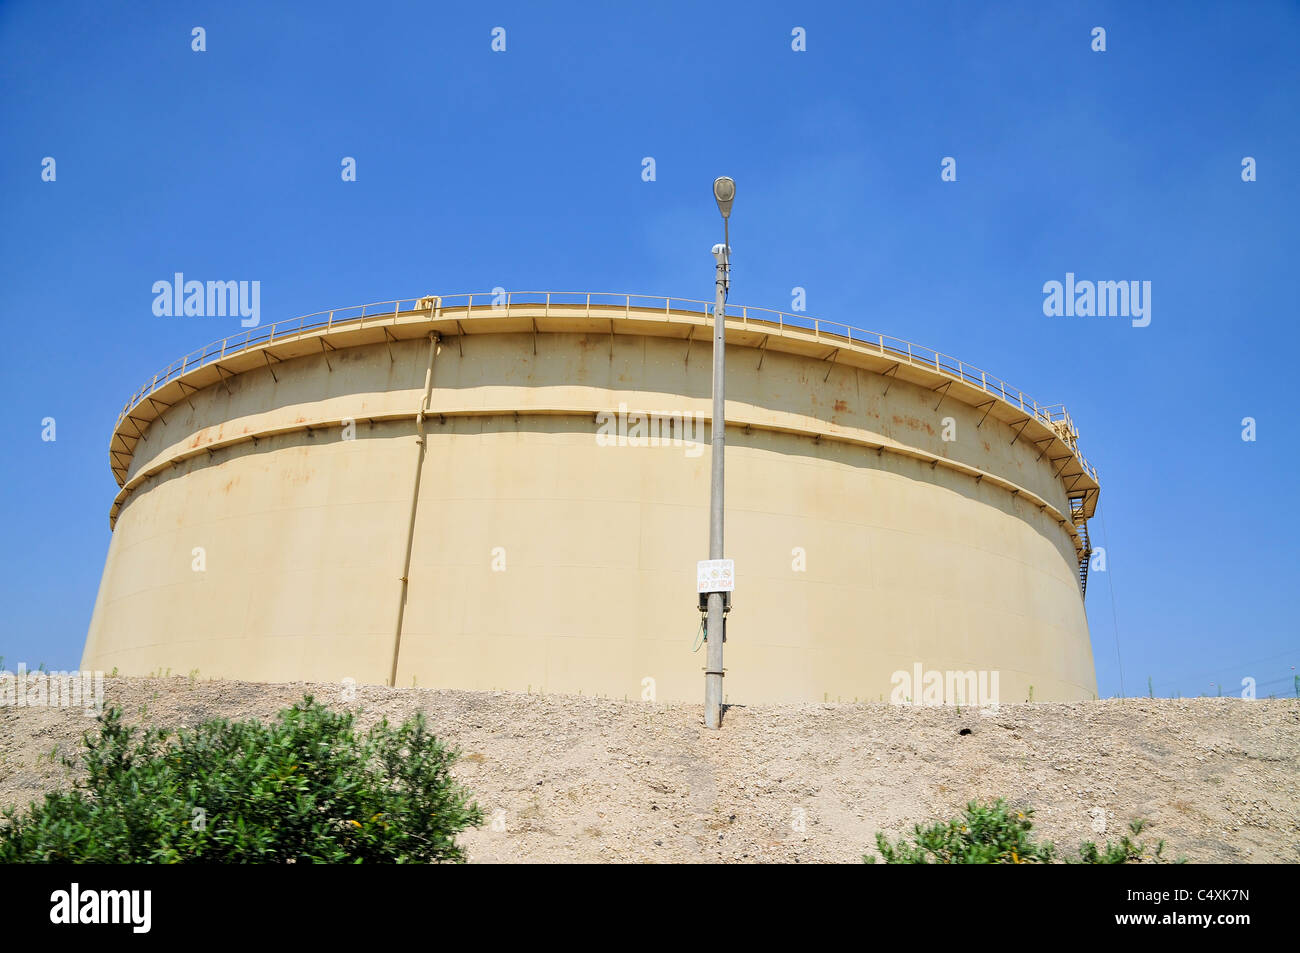 diesel fuel storage silo Stock Photo